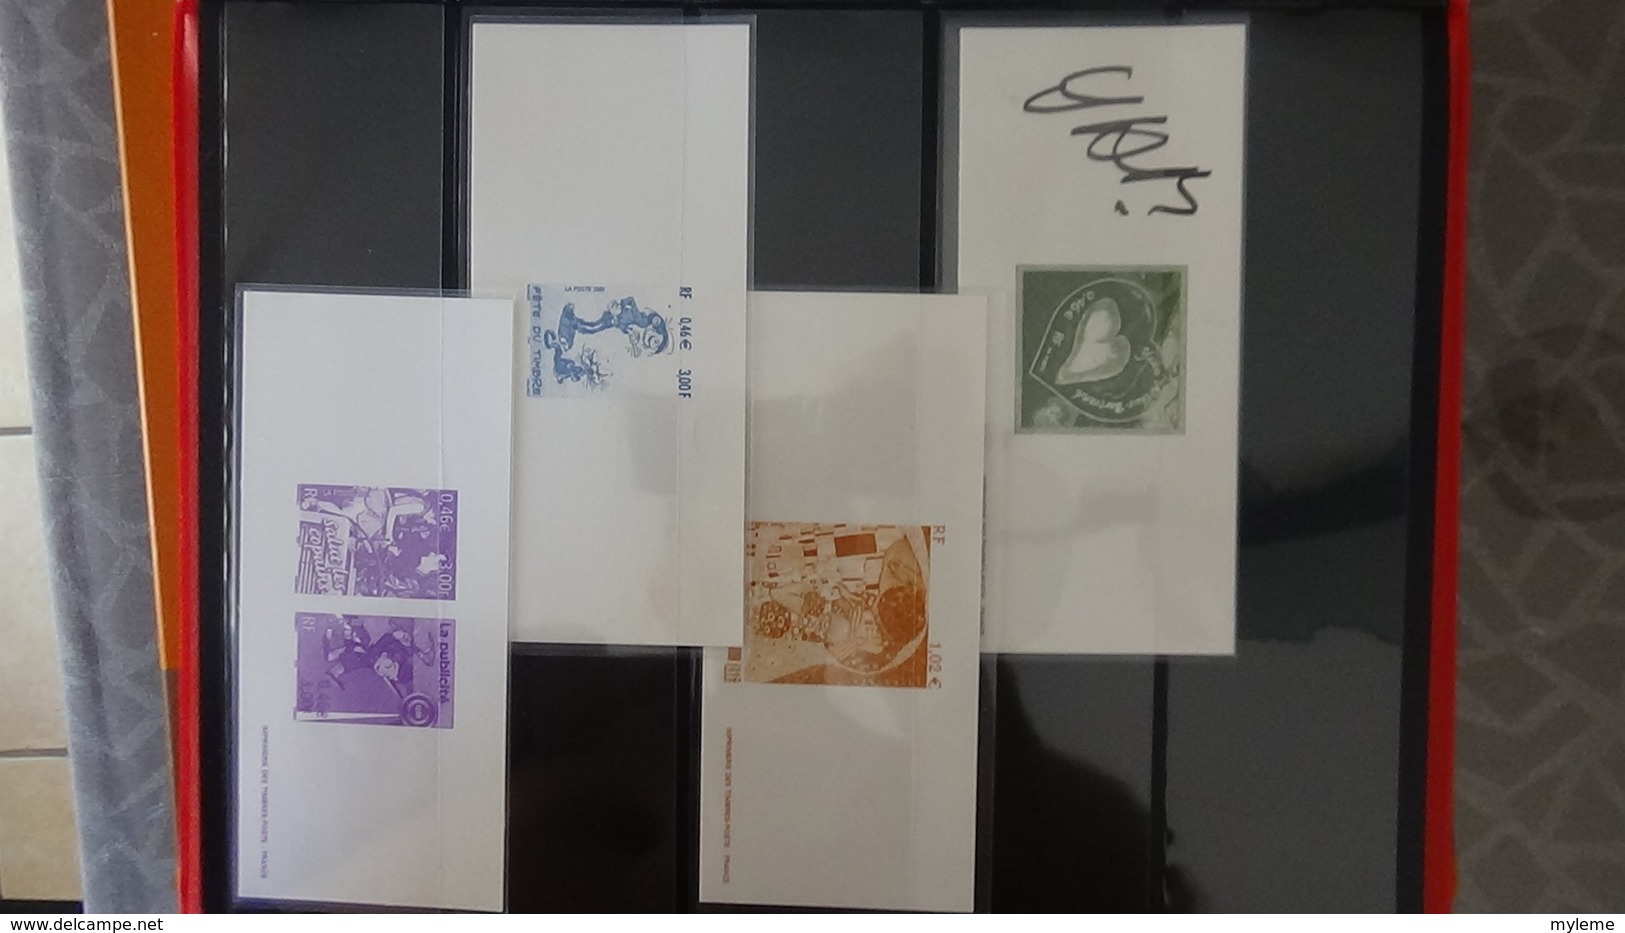 Album de 64 imprimeries des timbres postes et autres blocs **. A saisir  !!!